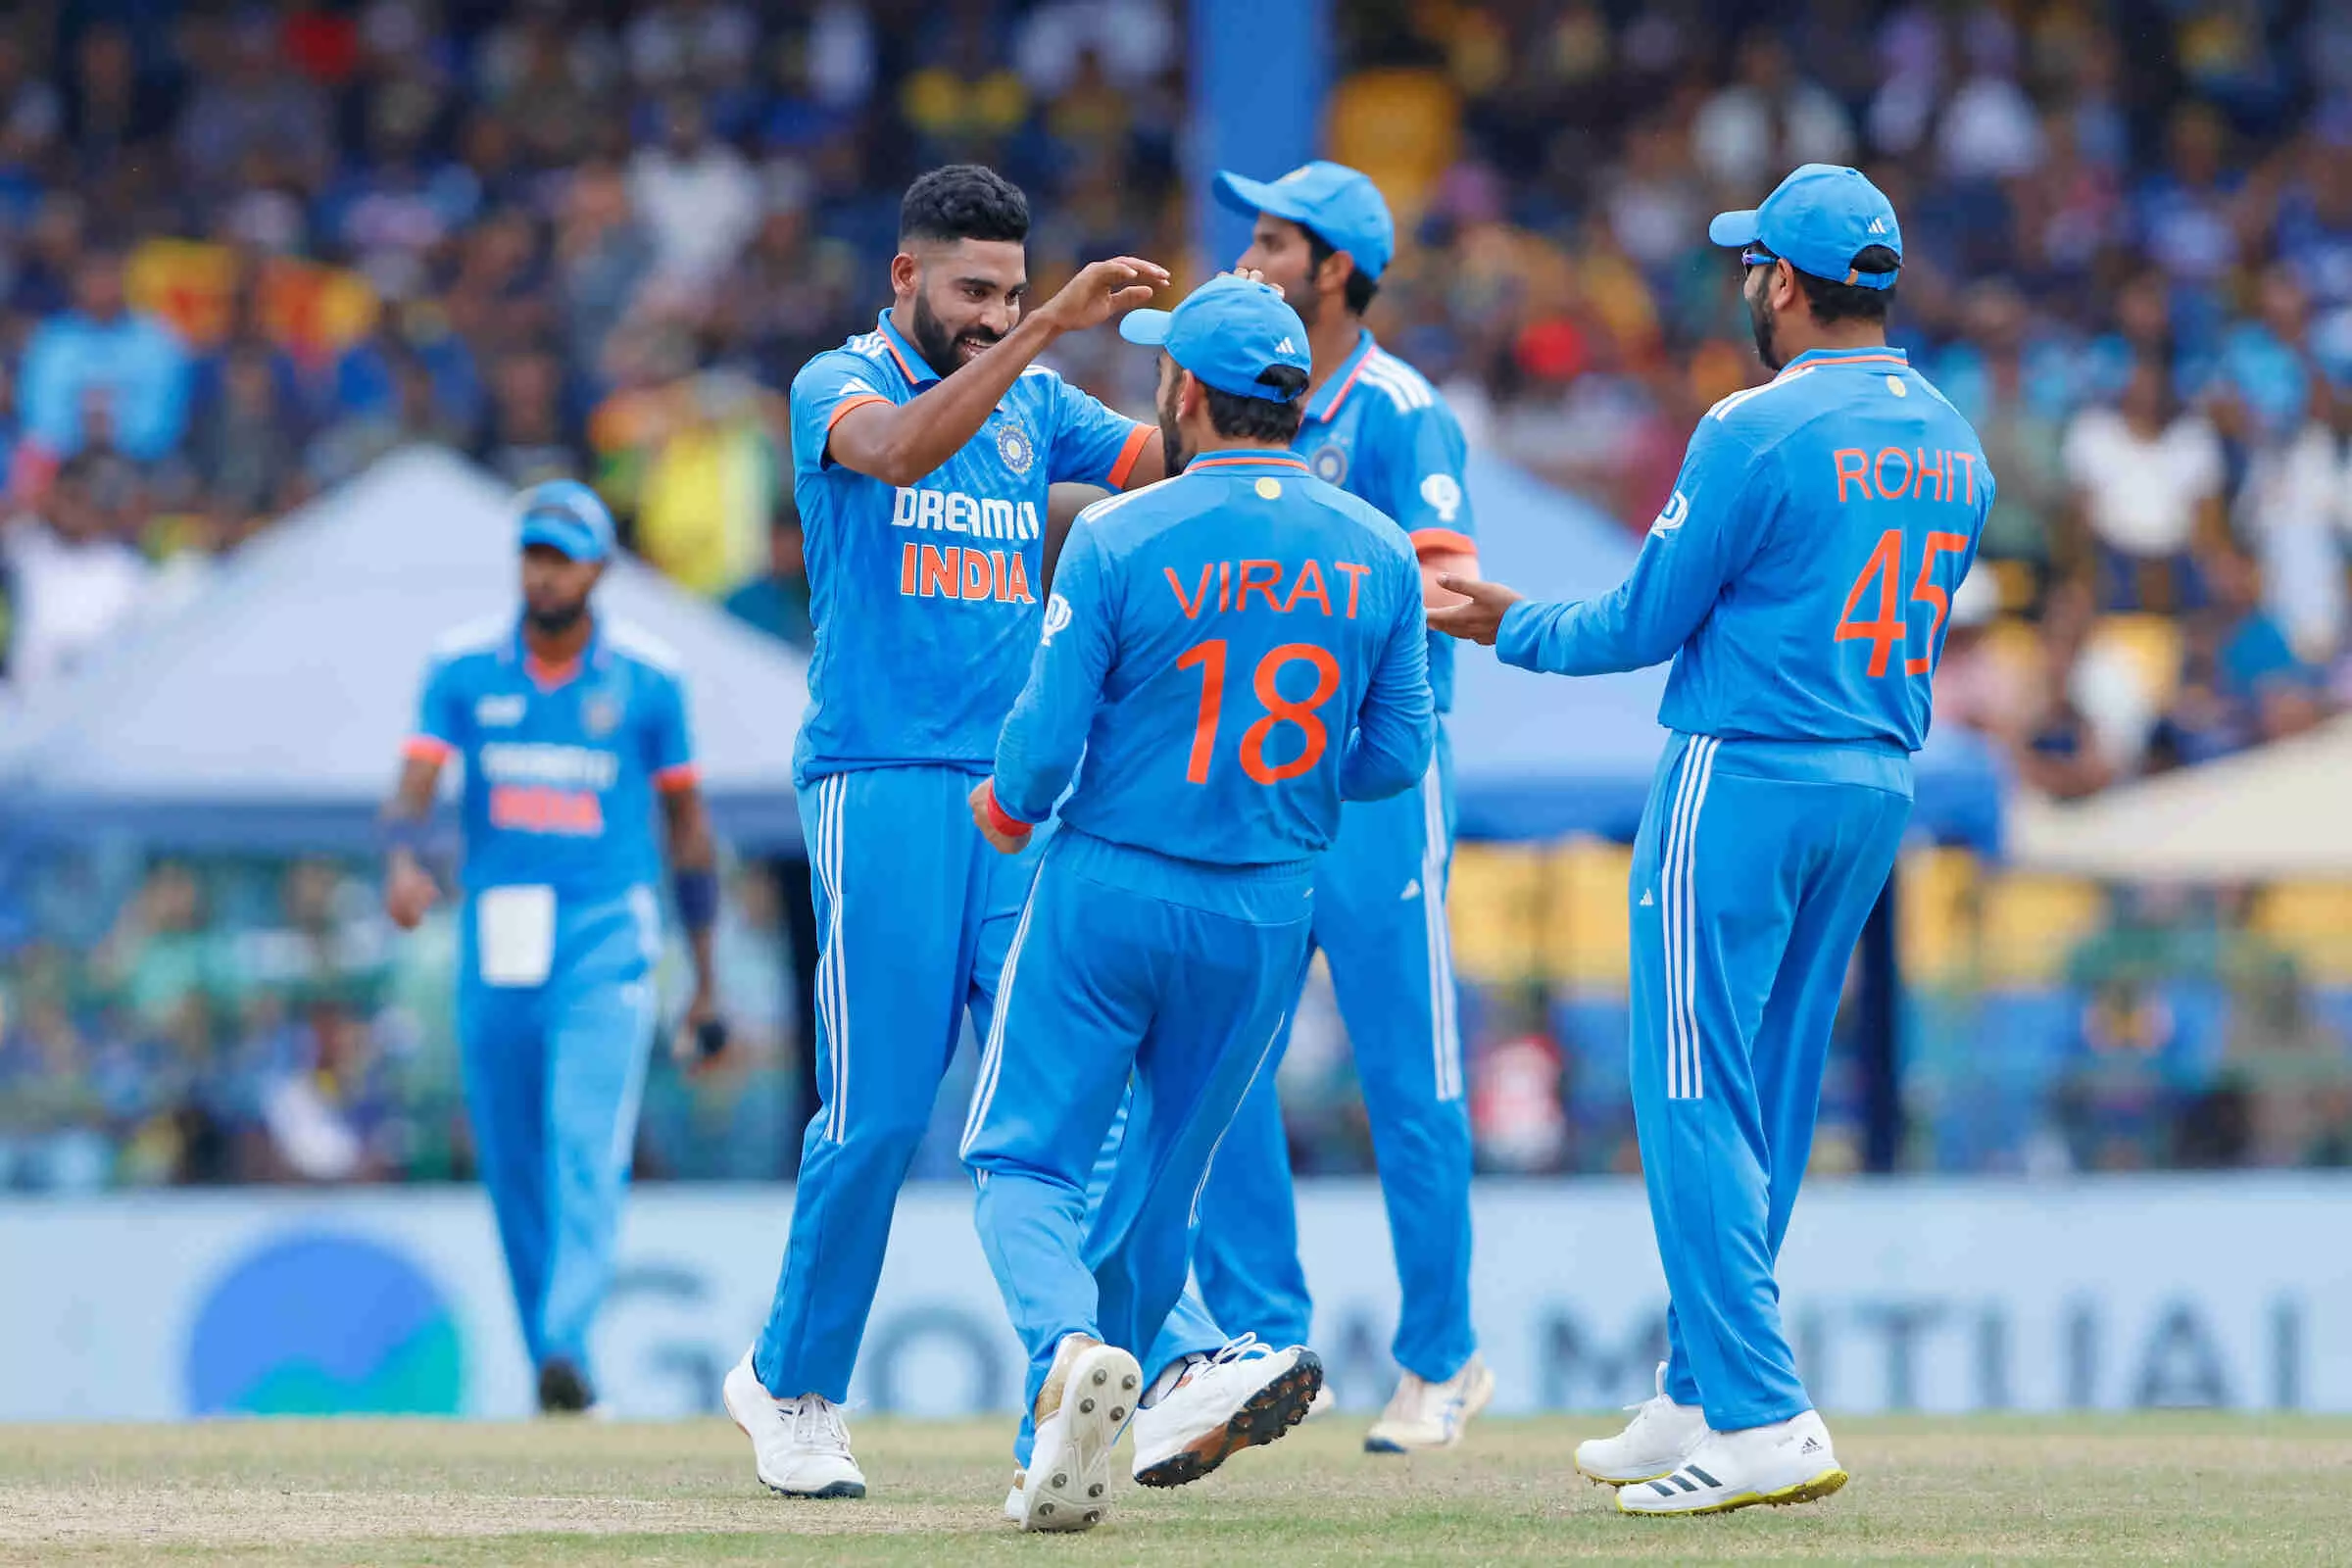 Asia Cup Final LIVE : एशिया कप फाइनल में श्रीलंका ने भारत को 51 रनों का दिया लक्ष्य, सिराज ने चटकाए 6 विकेट